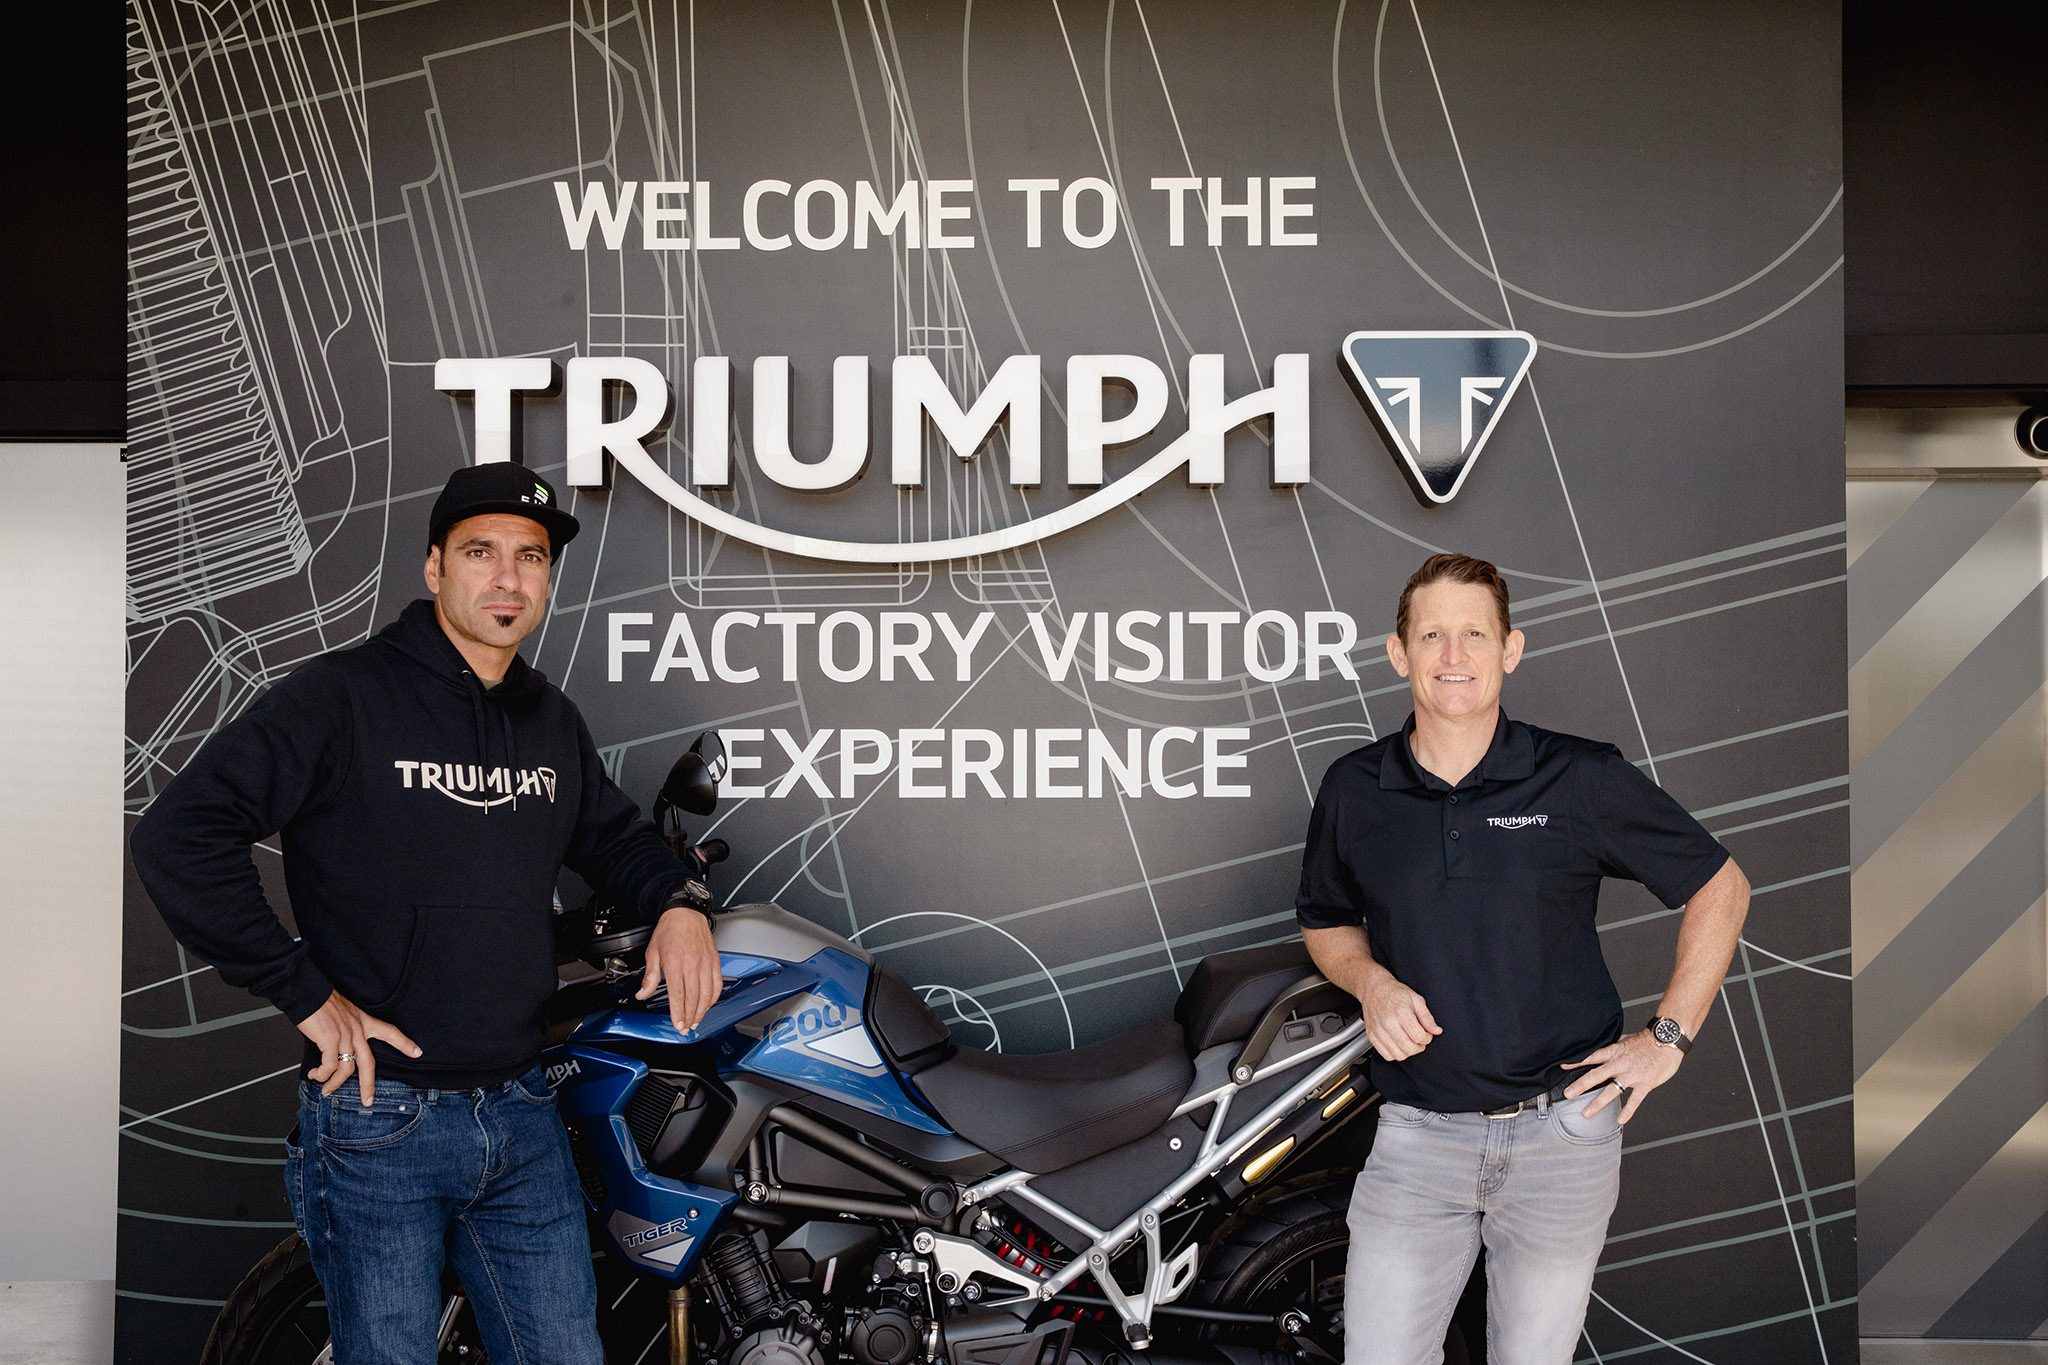 ริคกี้ คาร์ไมเคิล และ อิวาน เซร์บันเตส เข้าร่วมการทดสอบและการพัฒนารถจักรยานยนต์ออฟโรด ที่สำนักงานใหญ่ไทรอัมพ์